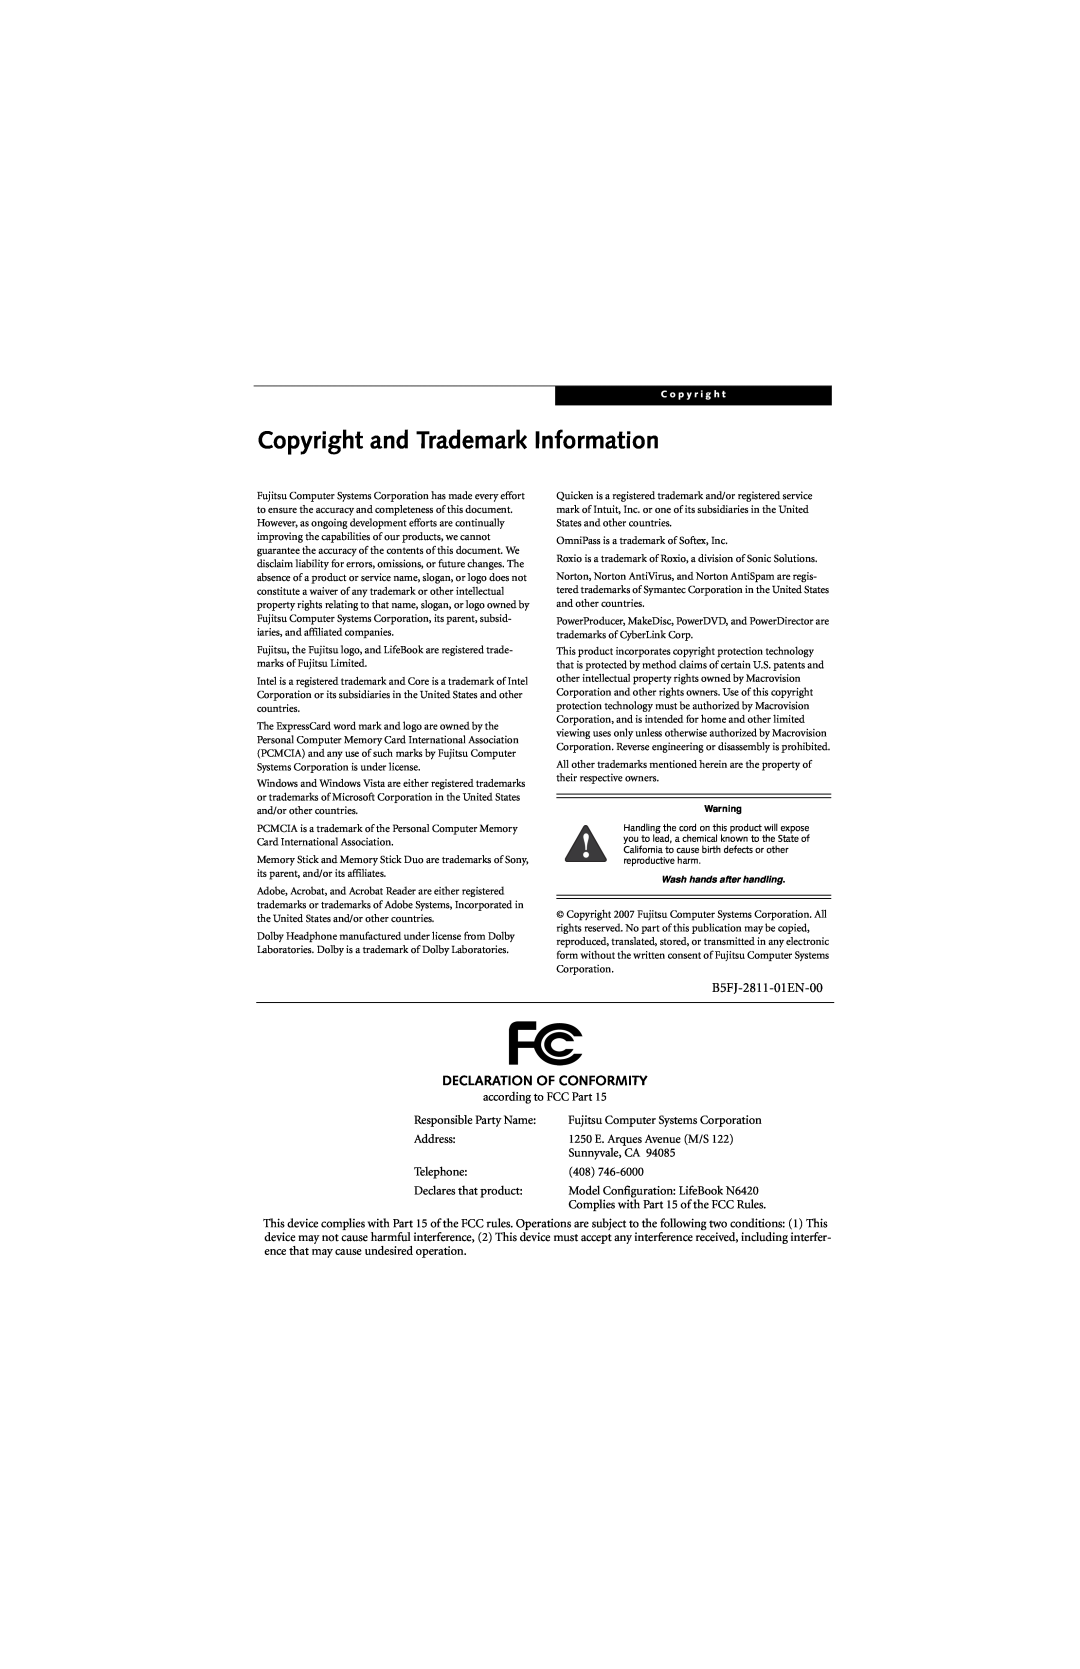 Fujitsu N6420 manual Copyright and Trademark Information, B5FJ-2811-01EN-00, Declaration Of Conformity 